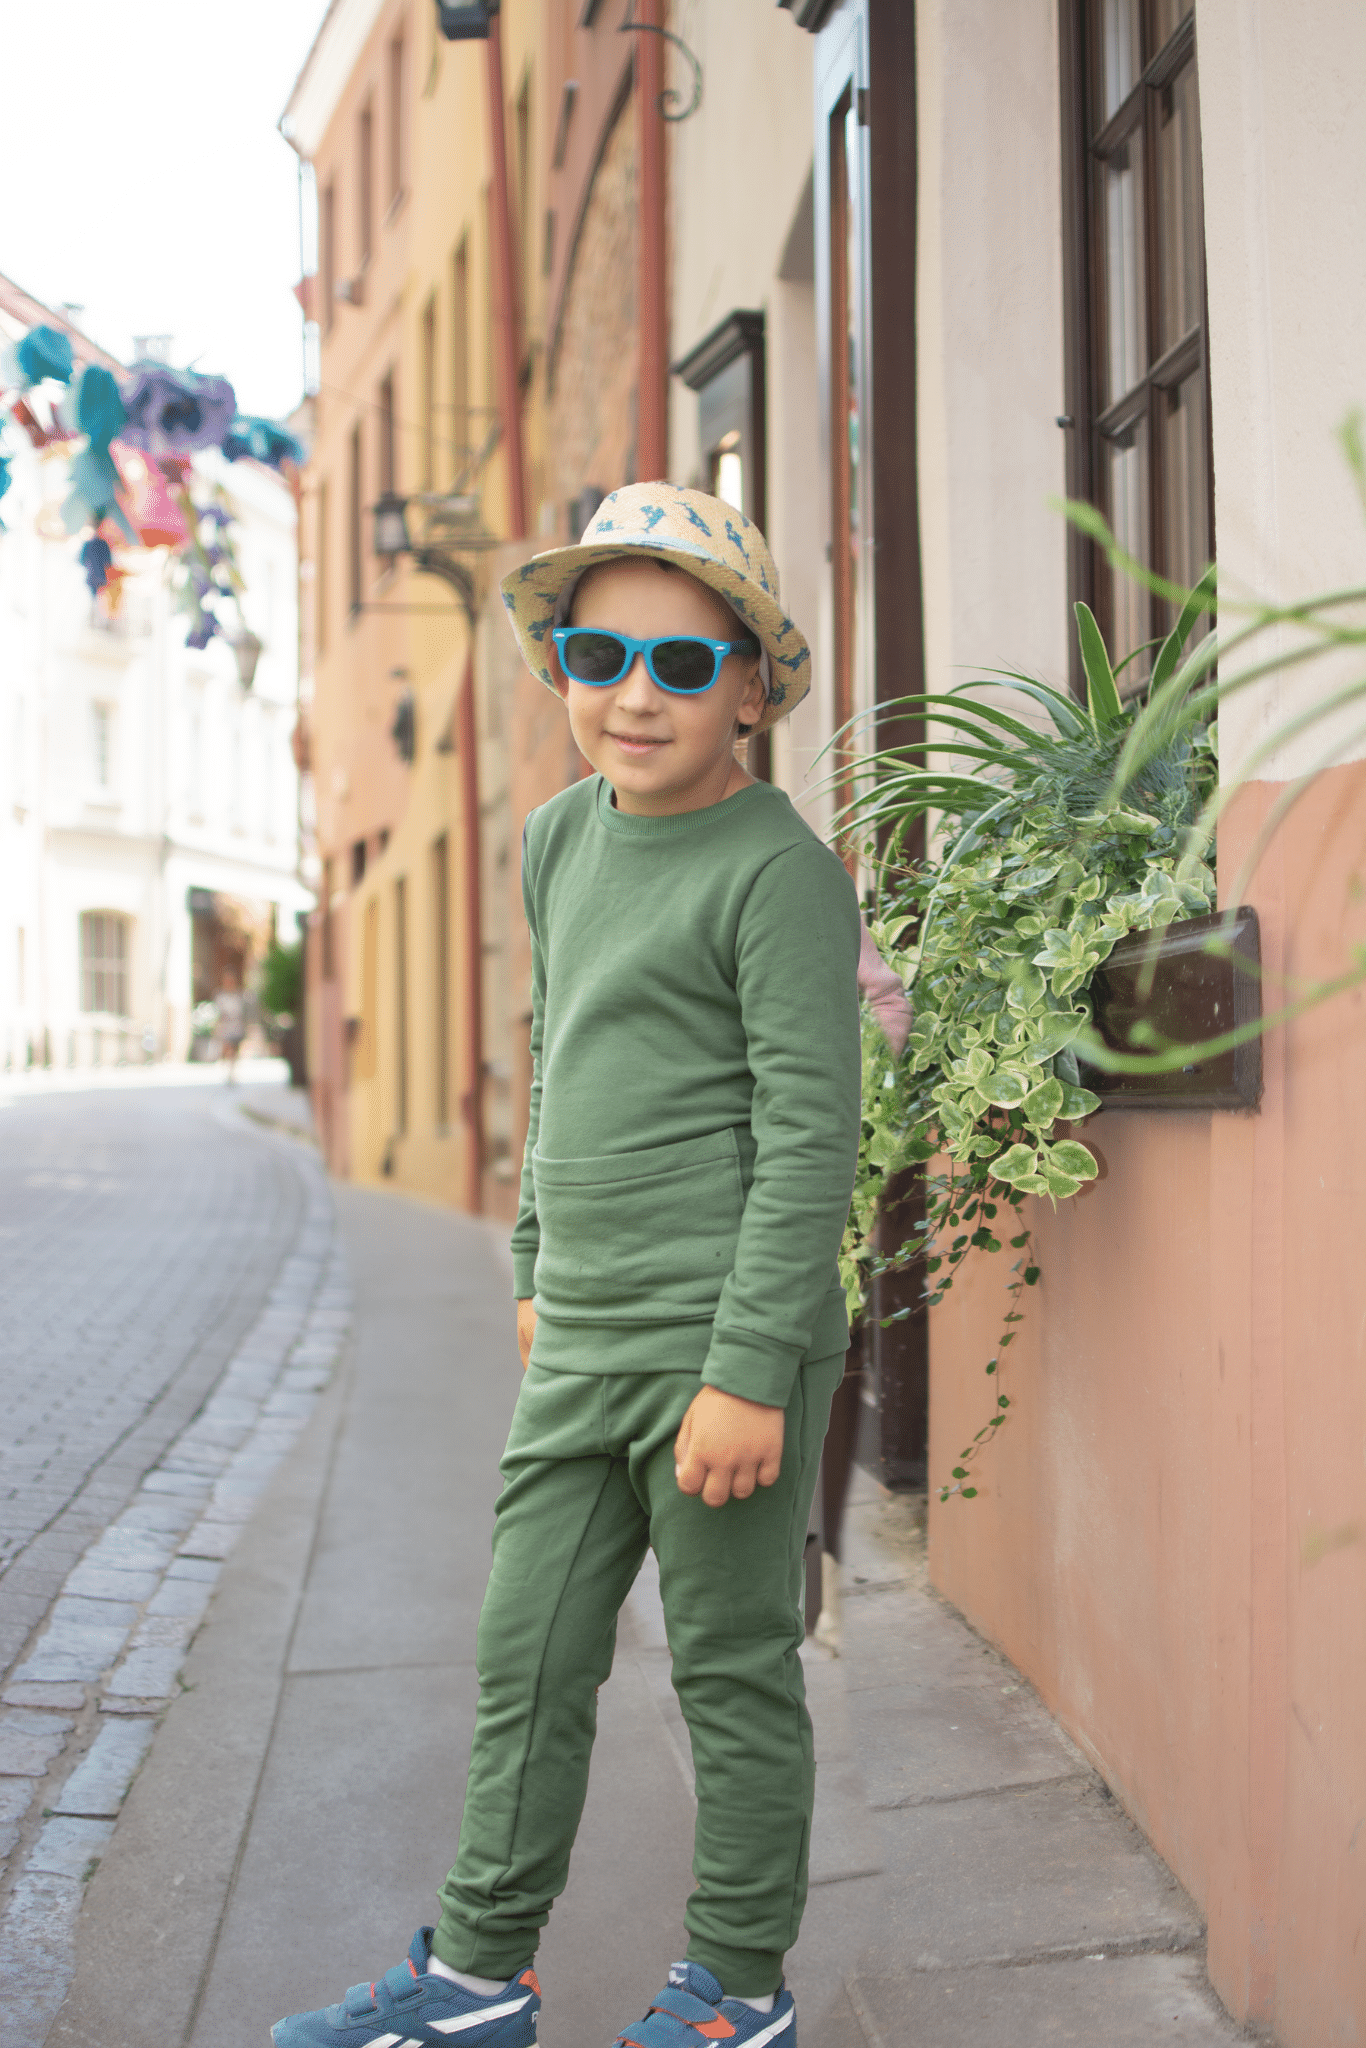 Chaki spalvos vaikiškas kostiumėlis “Šaltiems vakarams" - Stiliaus detalė